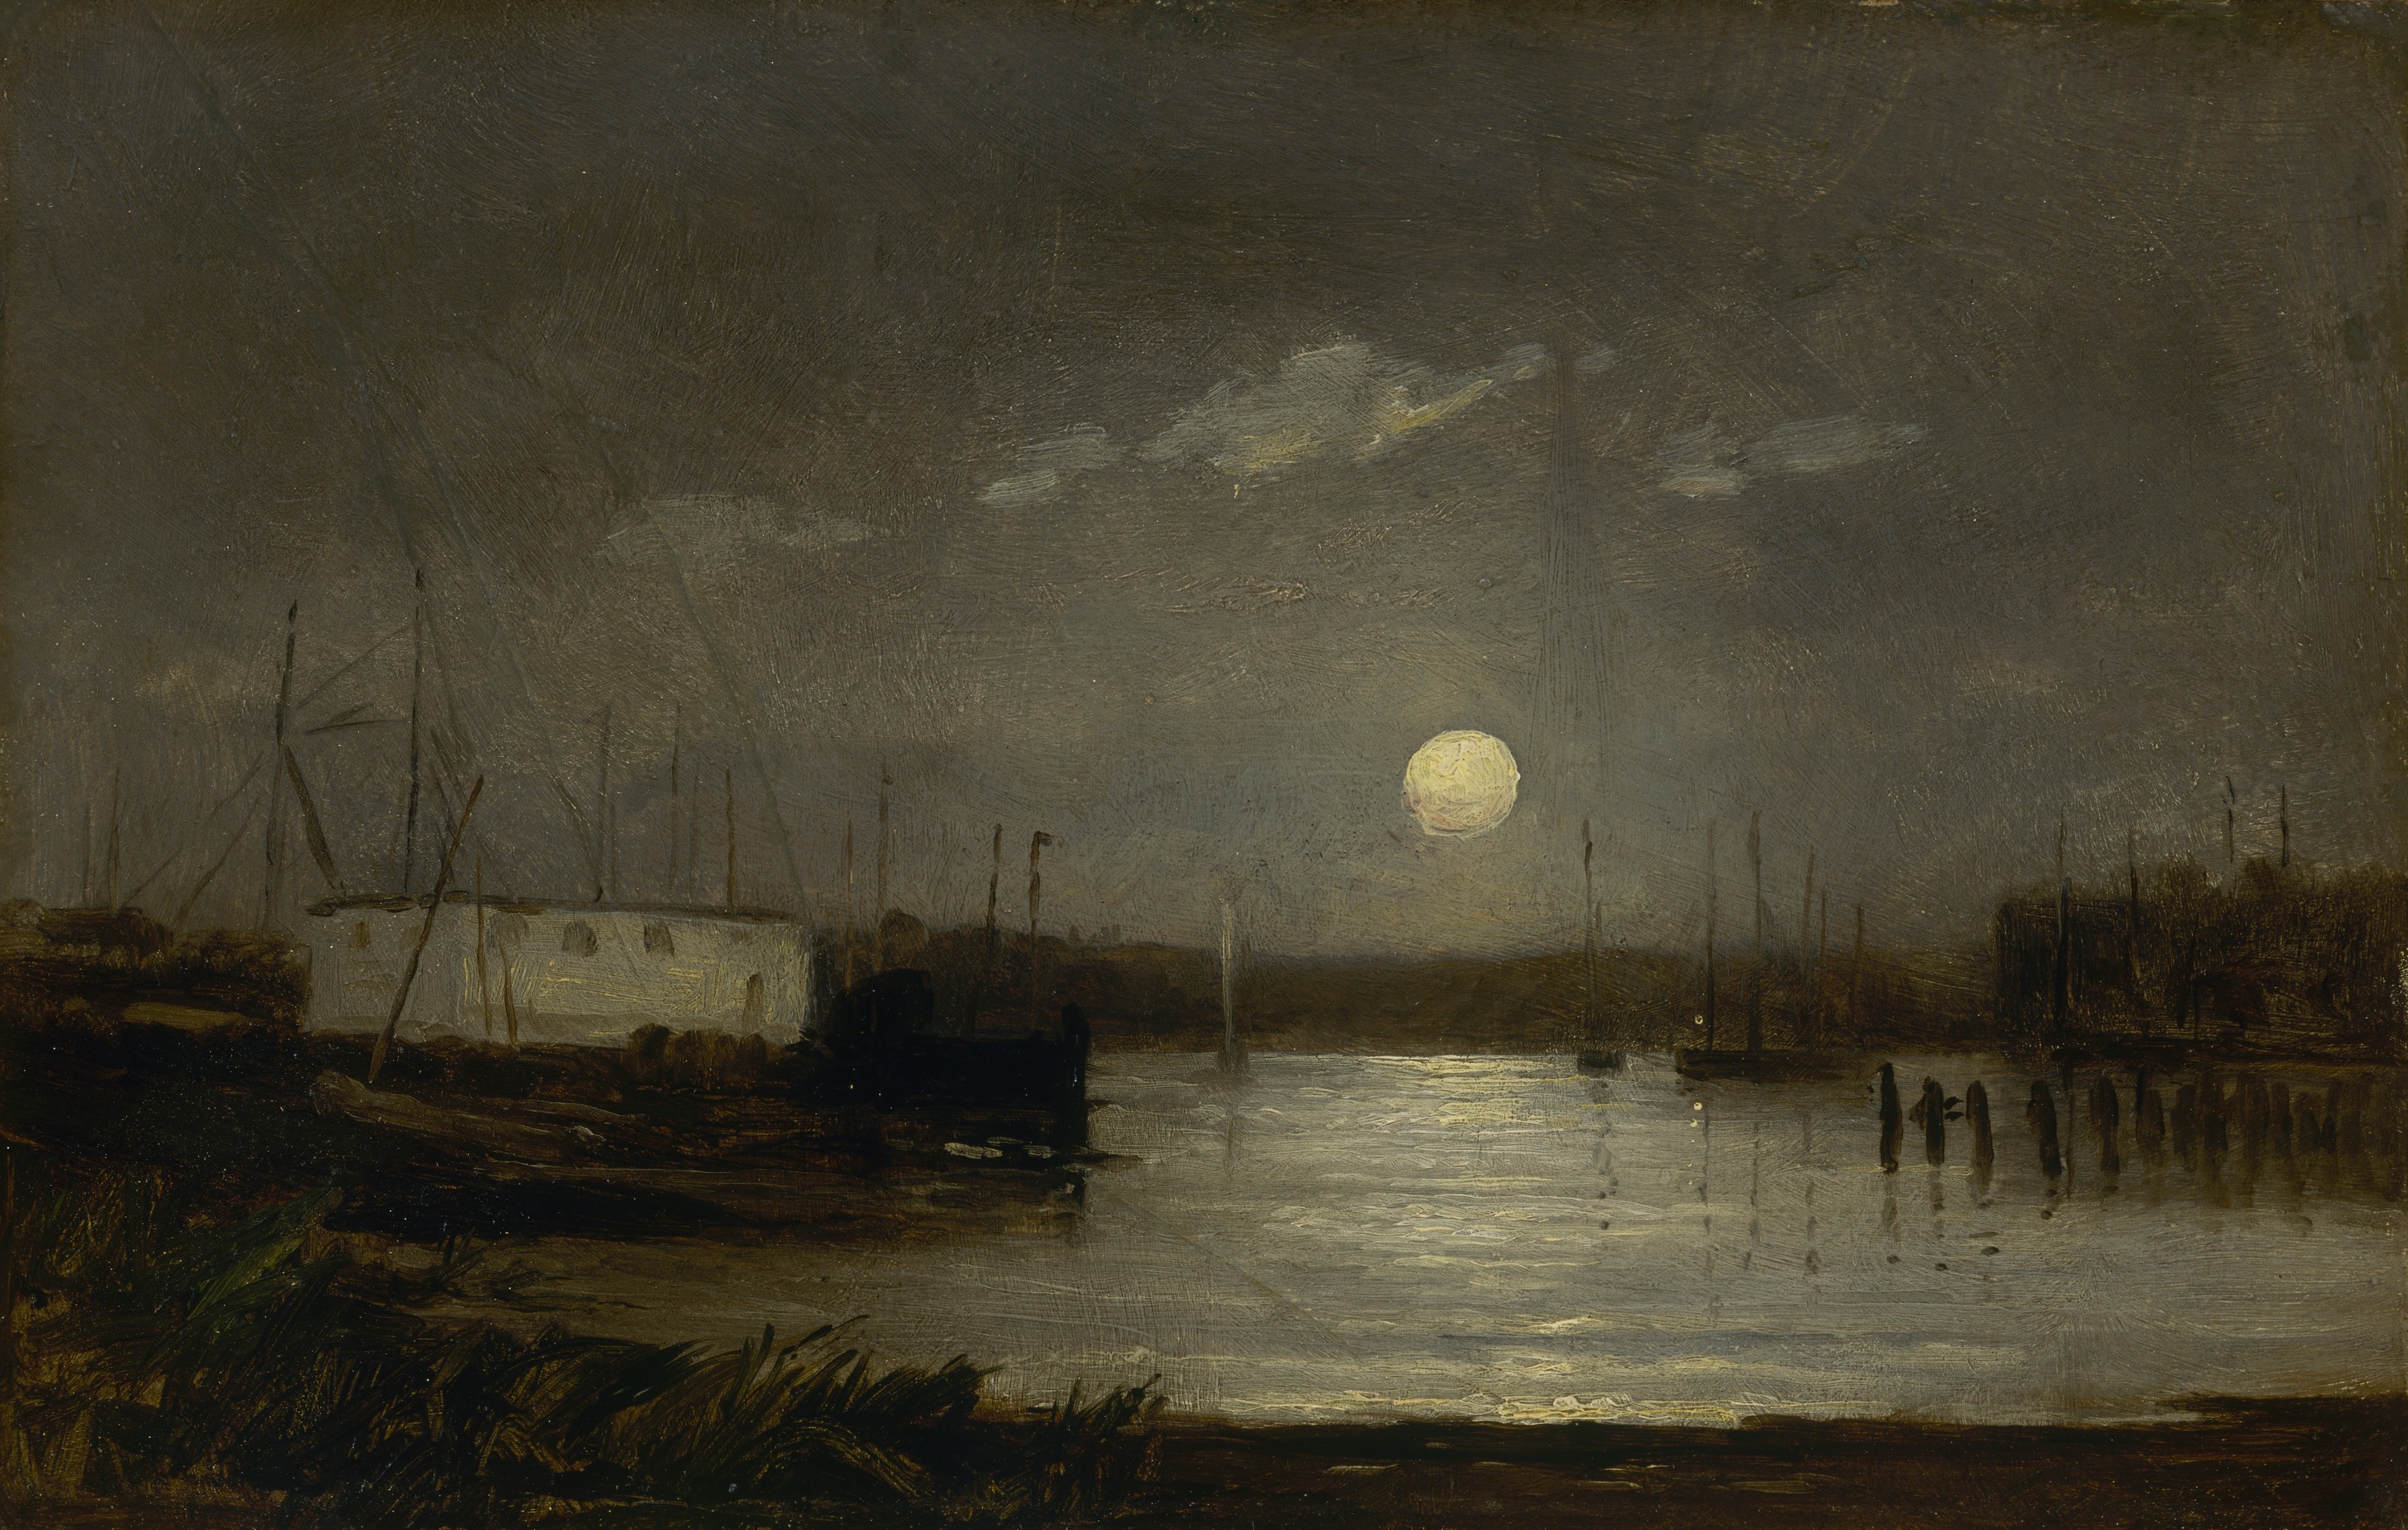 بدون عنوان (قمر فوق ميناء، مشهد رصيف الميناء مع بدر وسواري قوارب) by Edward Mitchell Bannister - حوالي 1868 م - الأبعاد: 24.7 × 38.7  سم 